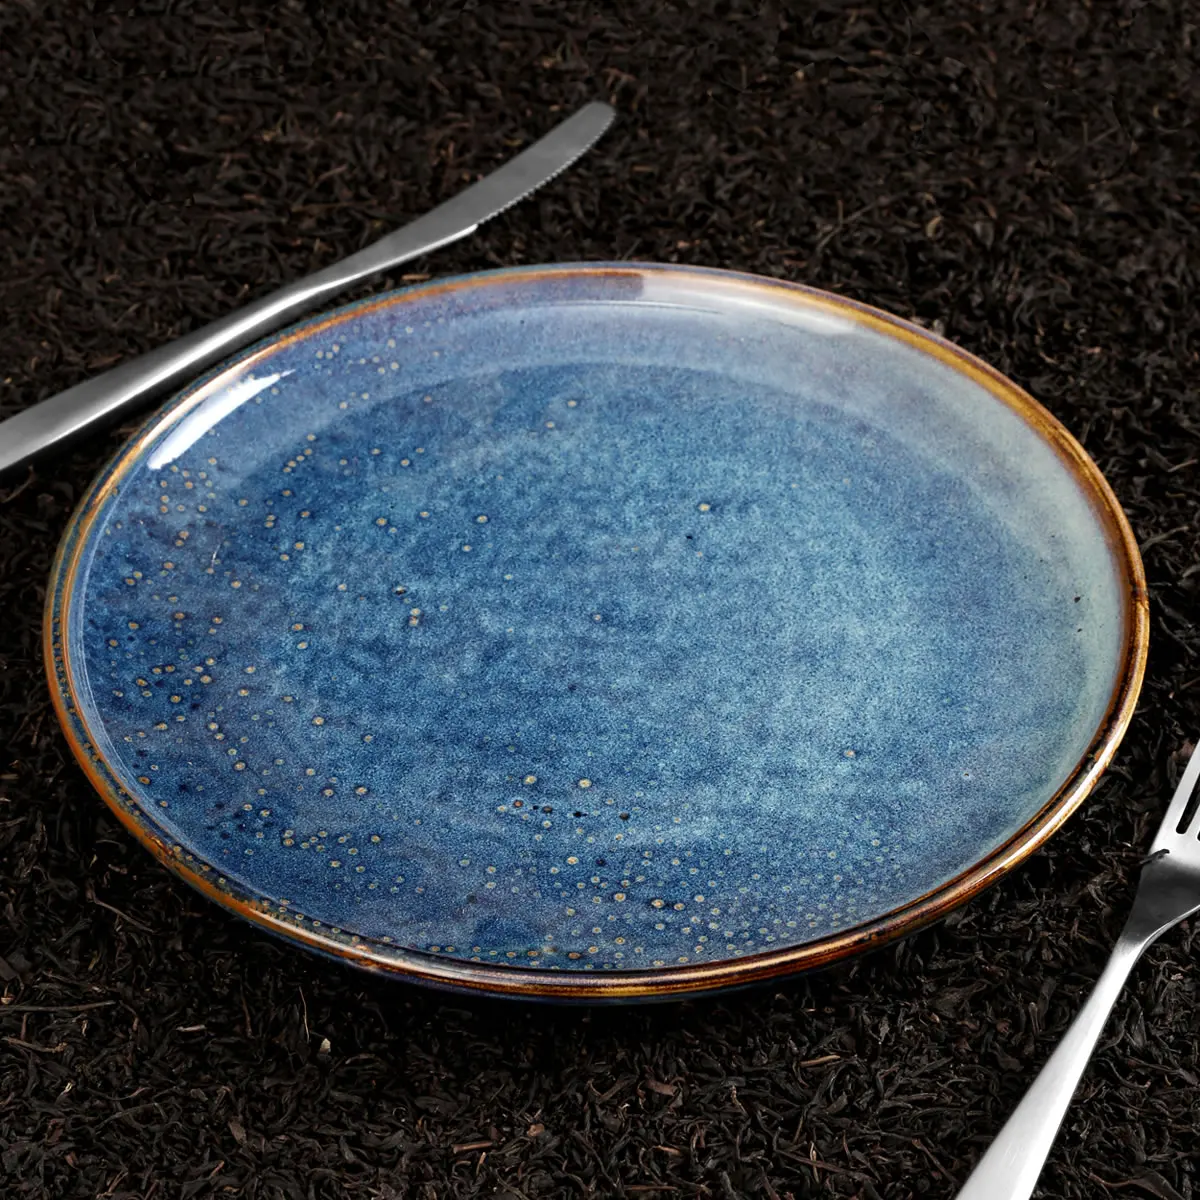  Прямая поставка с фабрики оптовая продажа голубое керамическое блюдо для отеля набор керамических обеденных тарелок экологически чистые фарфоровые тарелки